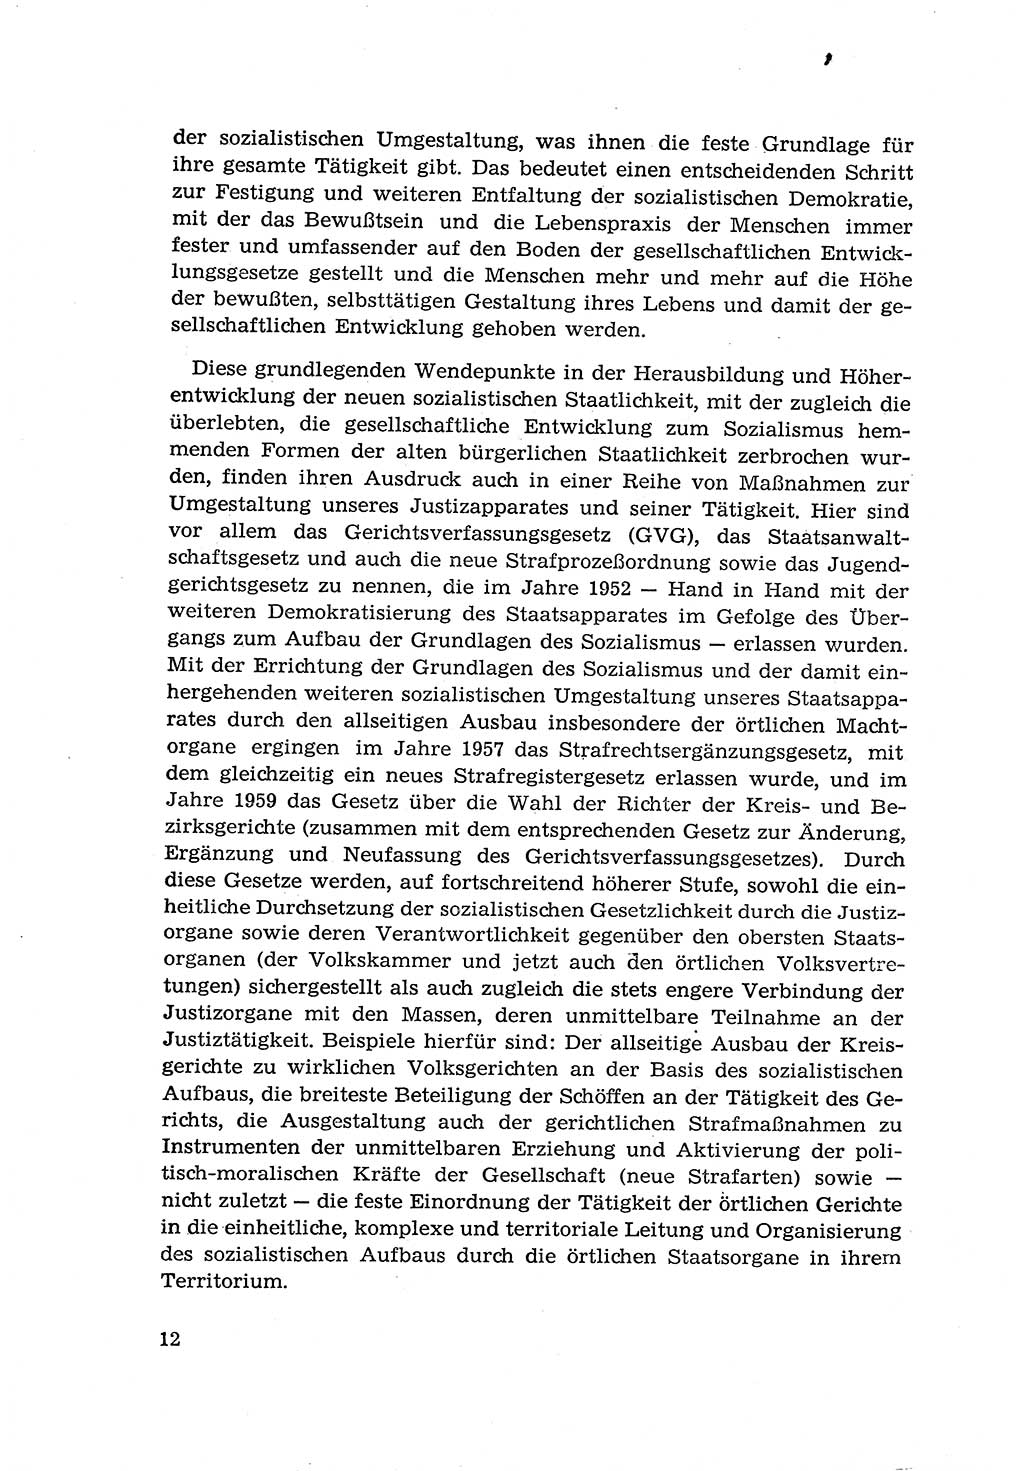 Zur Entwicklung des sozialistischen Strafrechts der Deutschen Demokratischen Republik (DDR) 1960, Seite 12 (Entw. soz. Strafr. DDR 1960, S. 12)